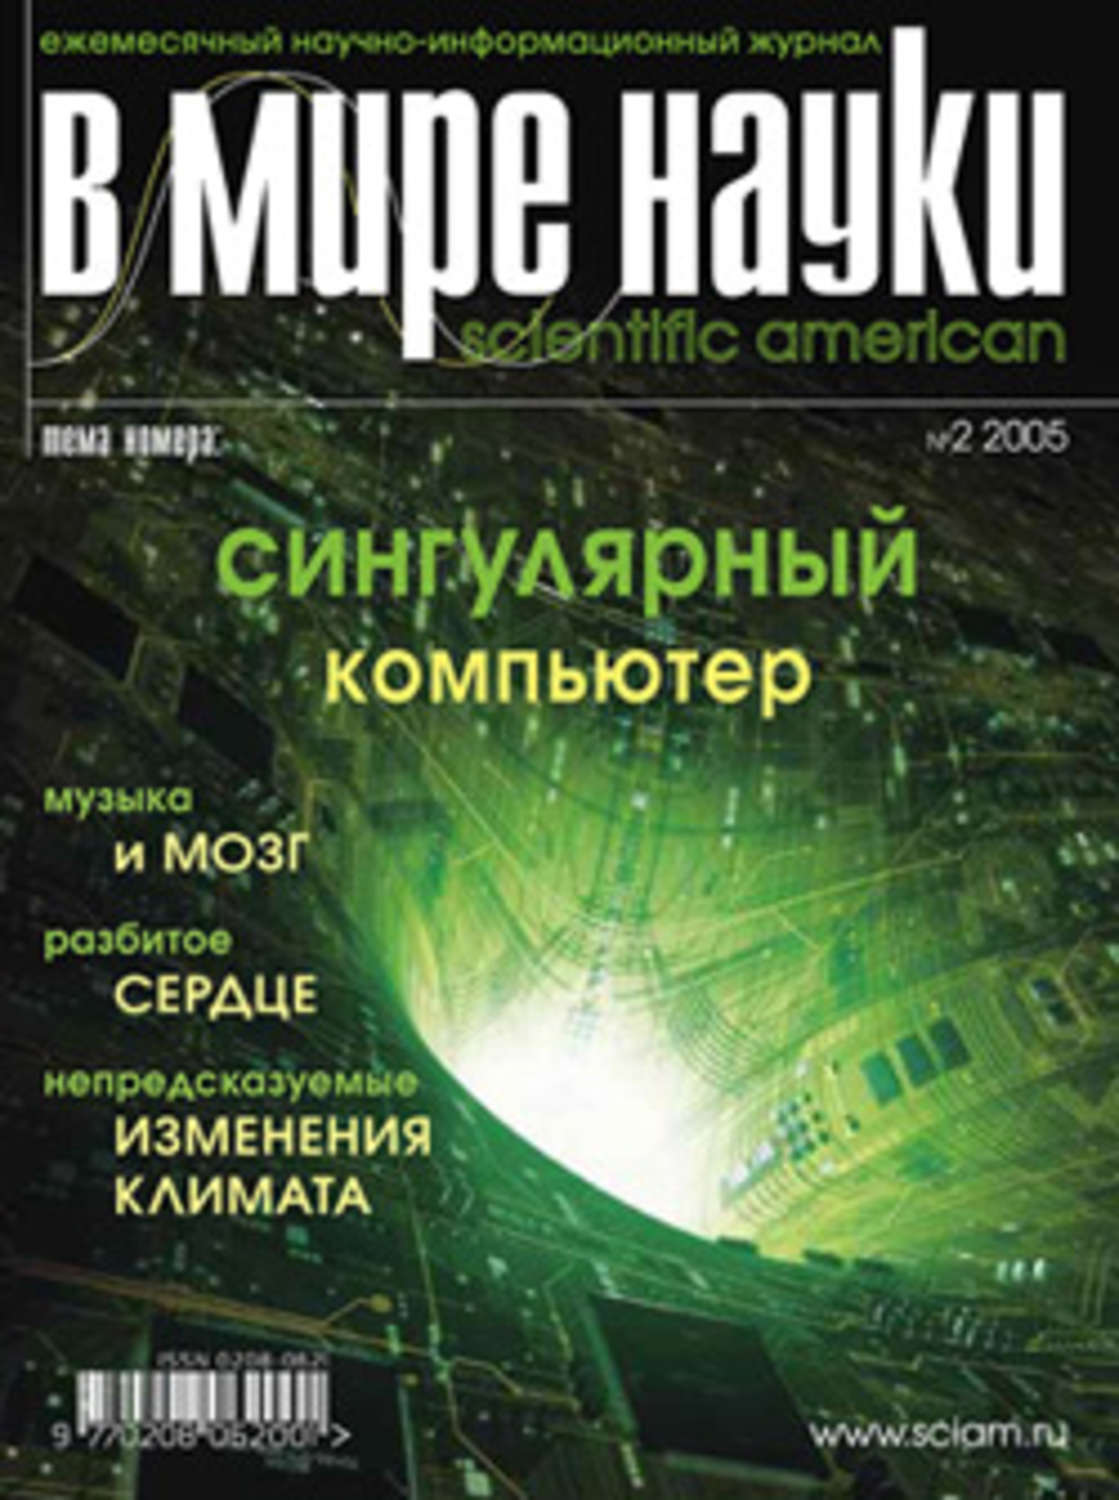 Журнал В мире науки №02/2005», В мире науки – скачать pdf на Литрес